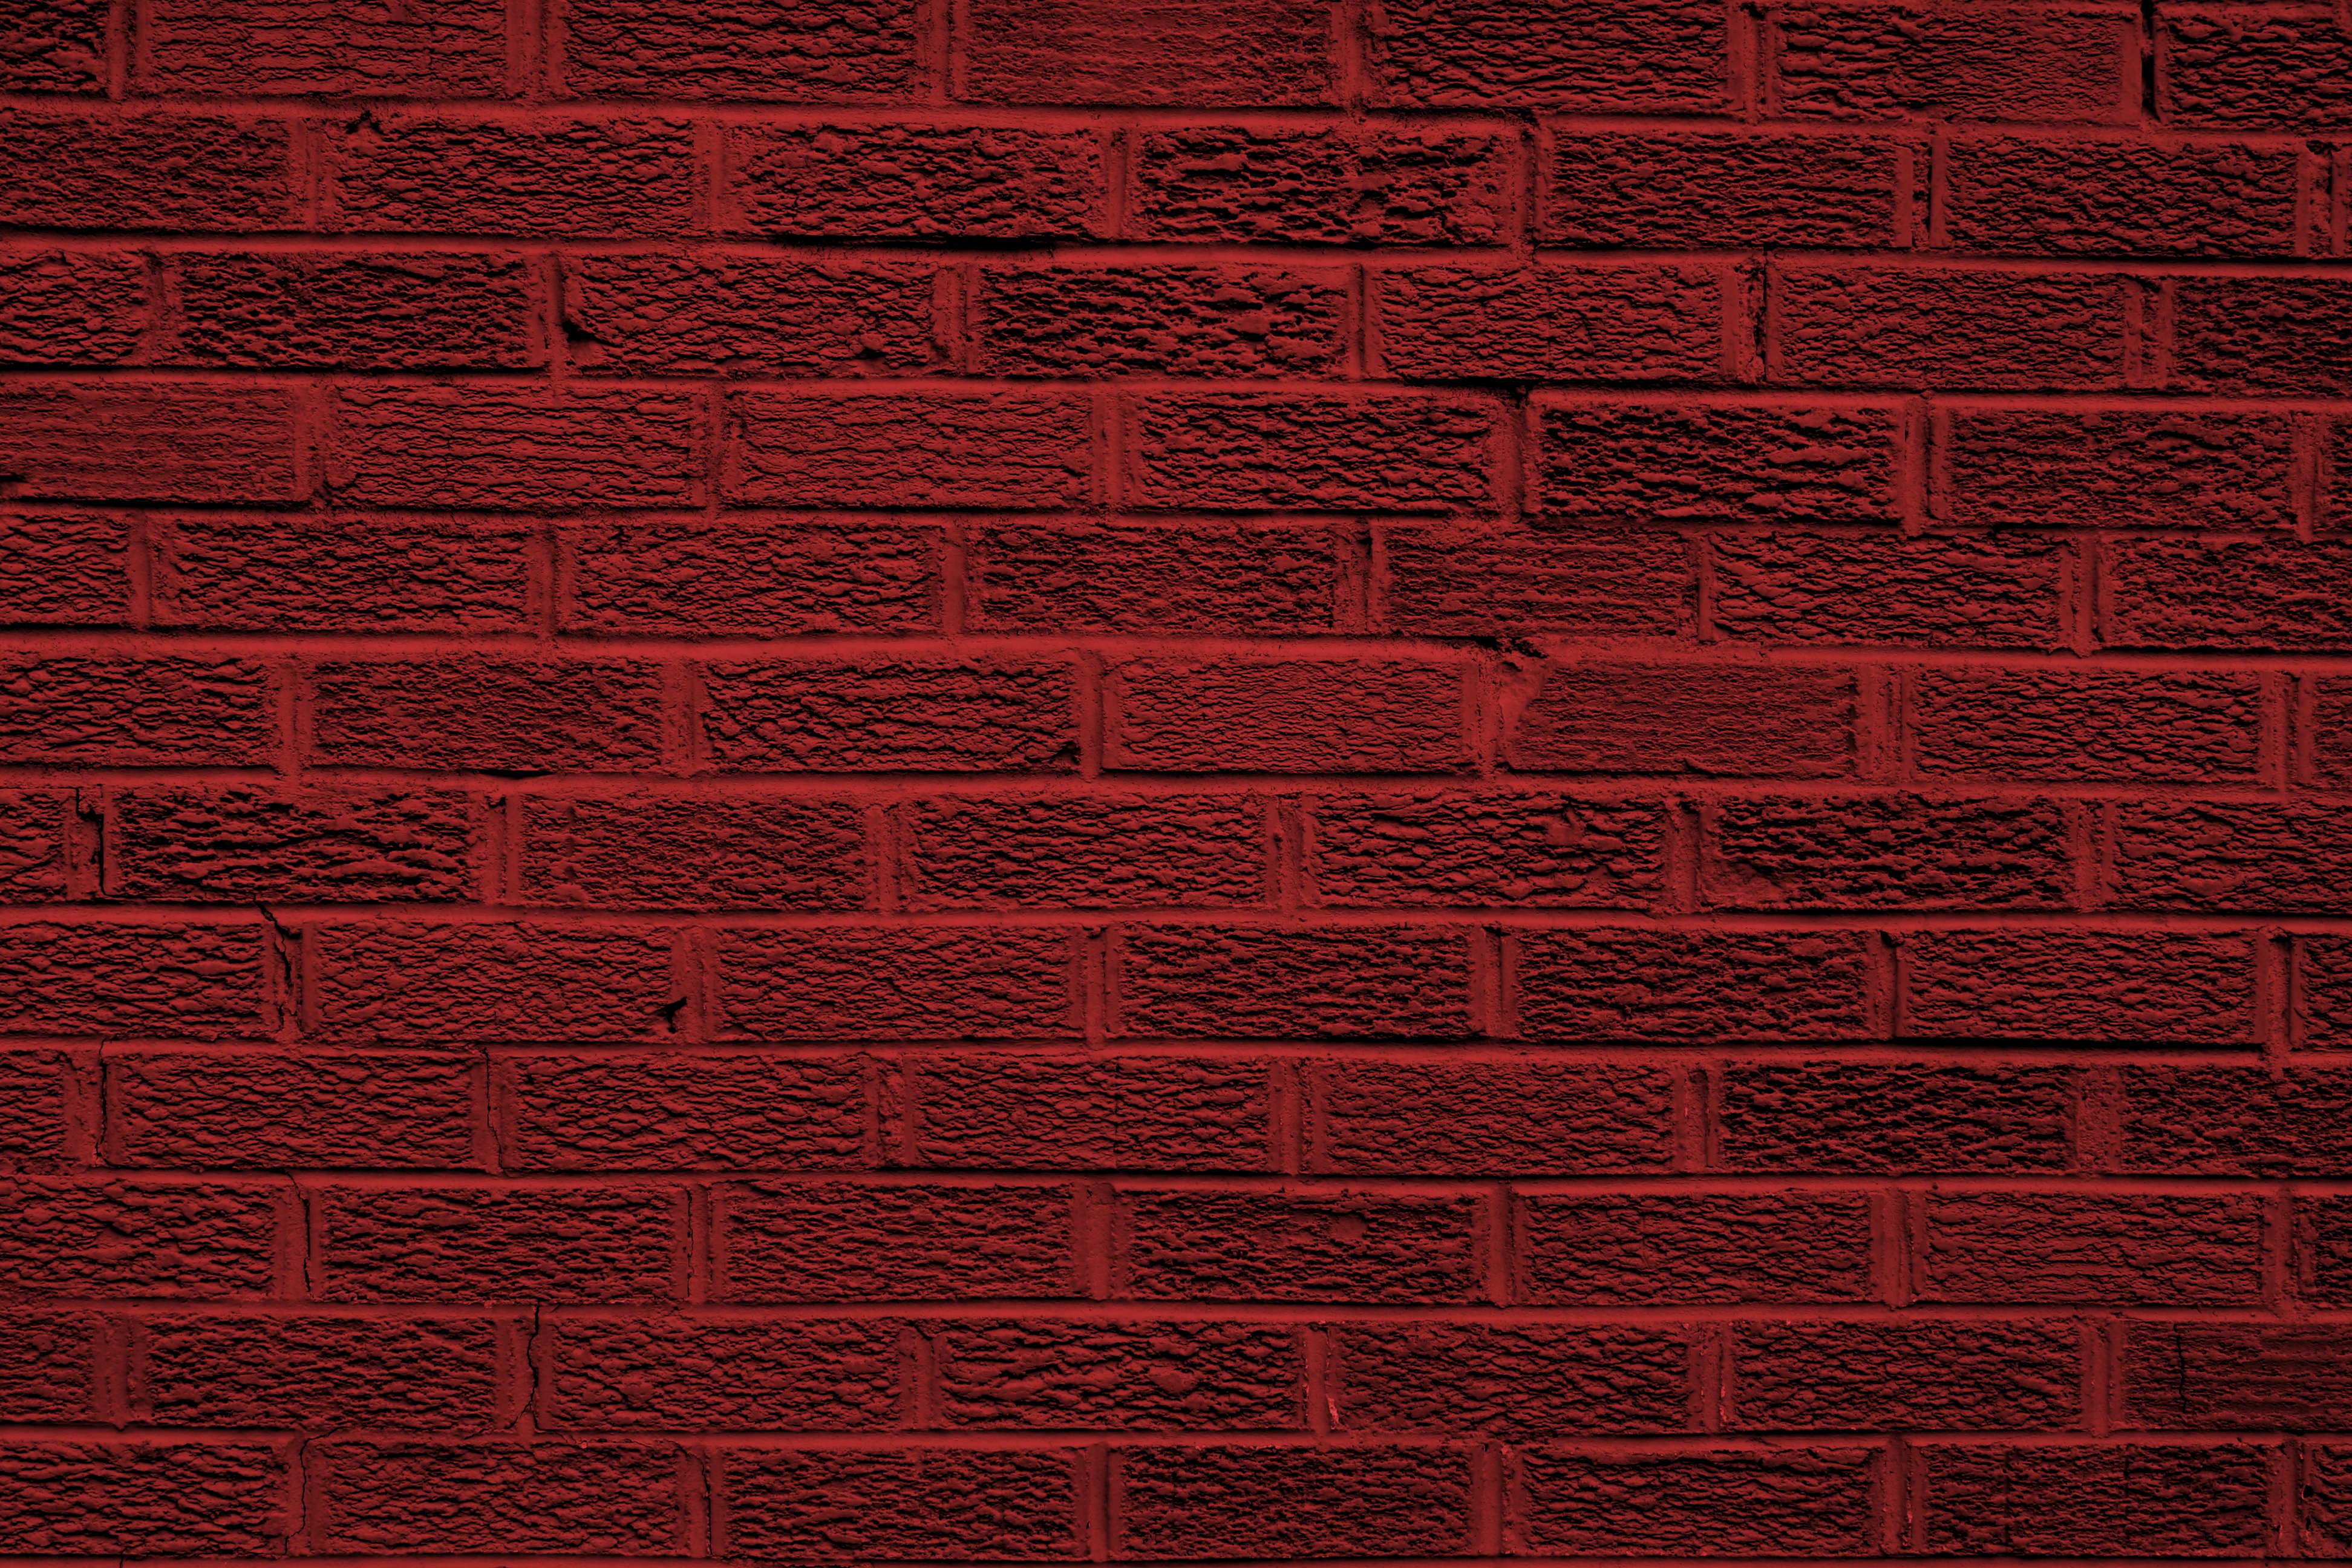 Brick Wall Dark Red - 3888x2592 Wallpaper 